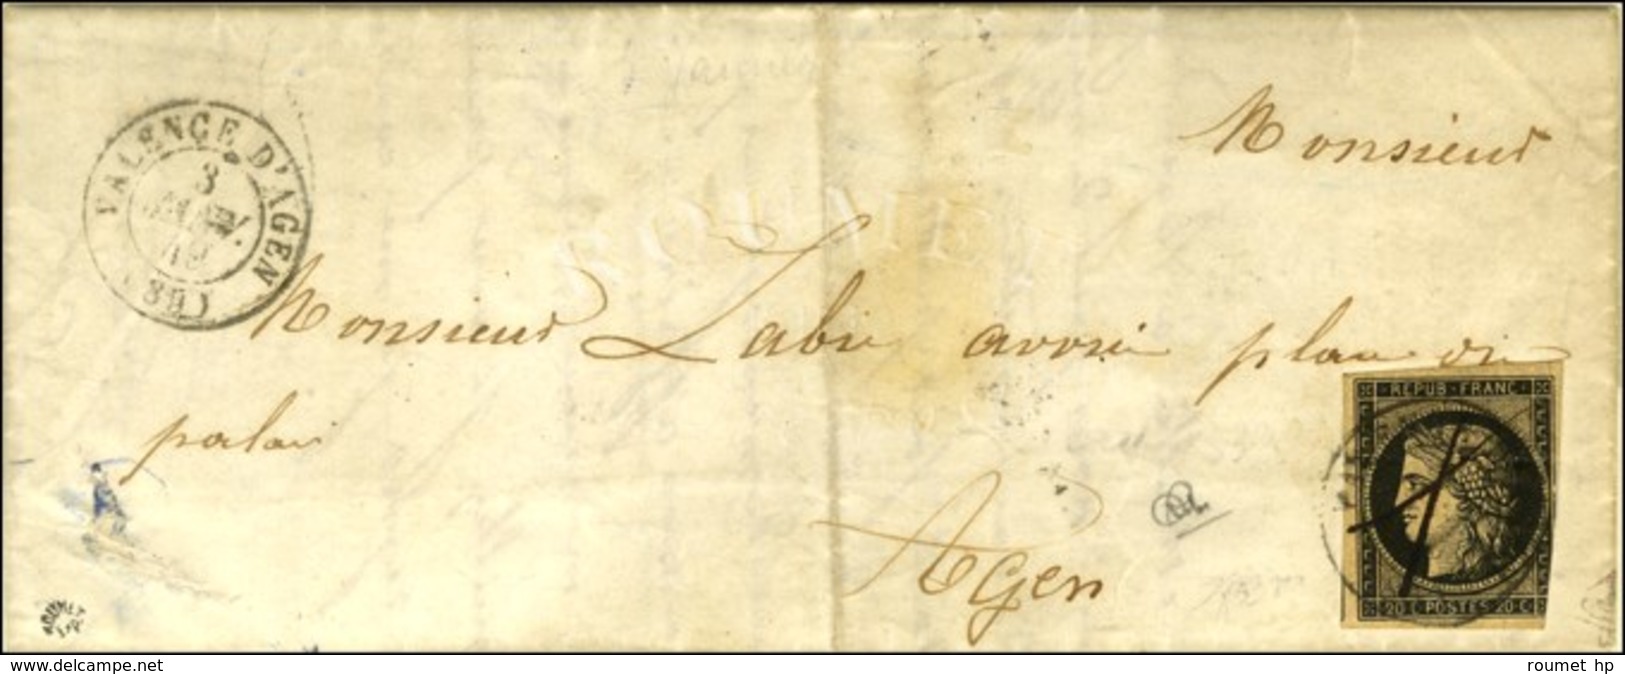 Plume + Càd T 15 VALENCE D'AGEN (85) 3 JANV. 49 / N° 3 (def) Sur Lettre Avec Texte Pour Agen. - TB. - R. - 1849-1850 Ceres